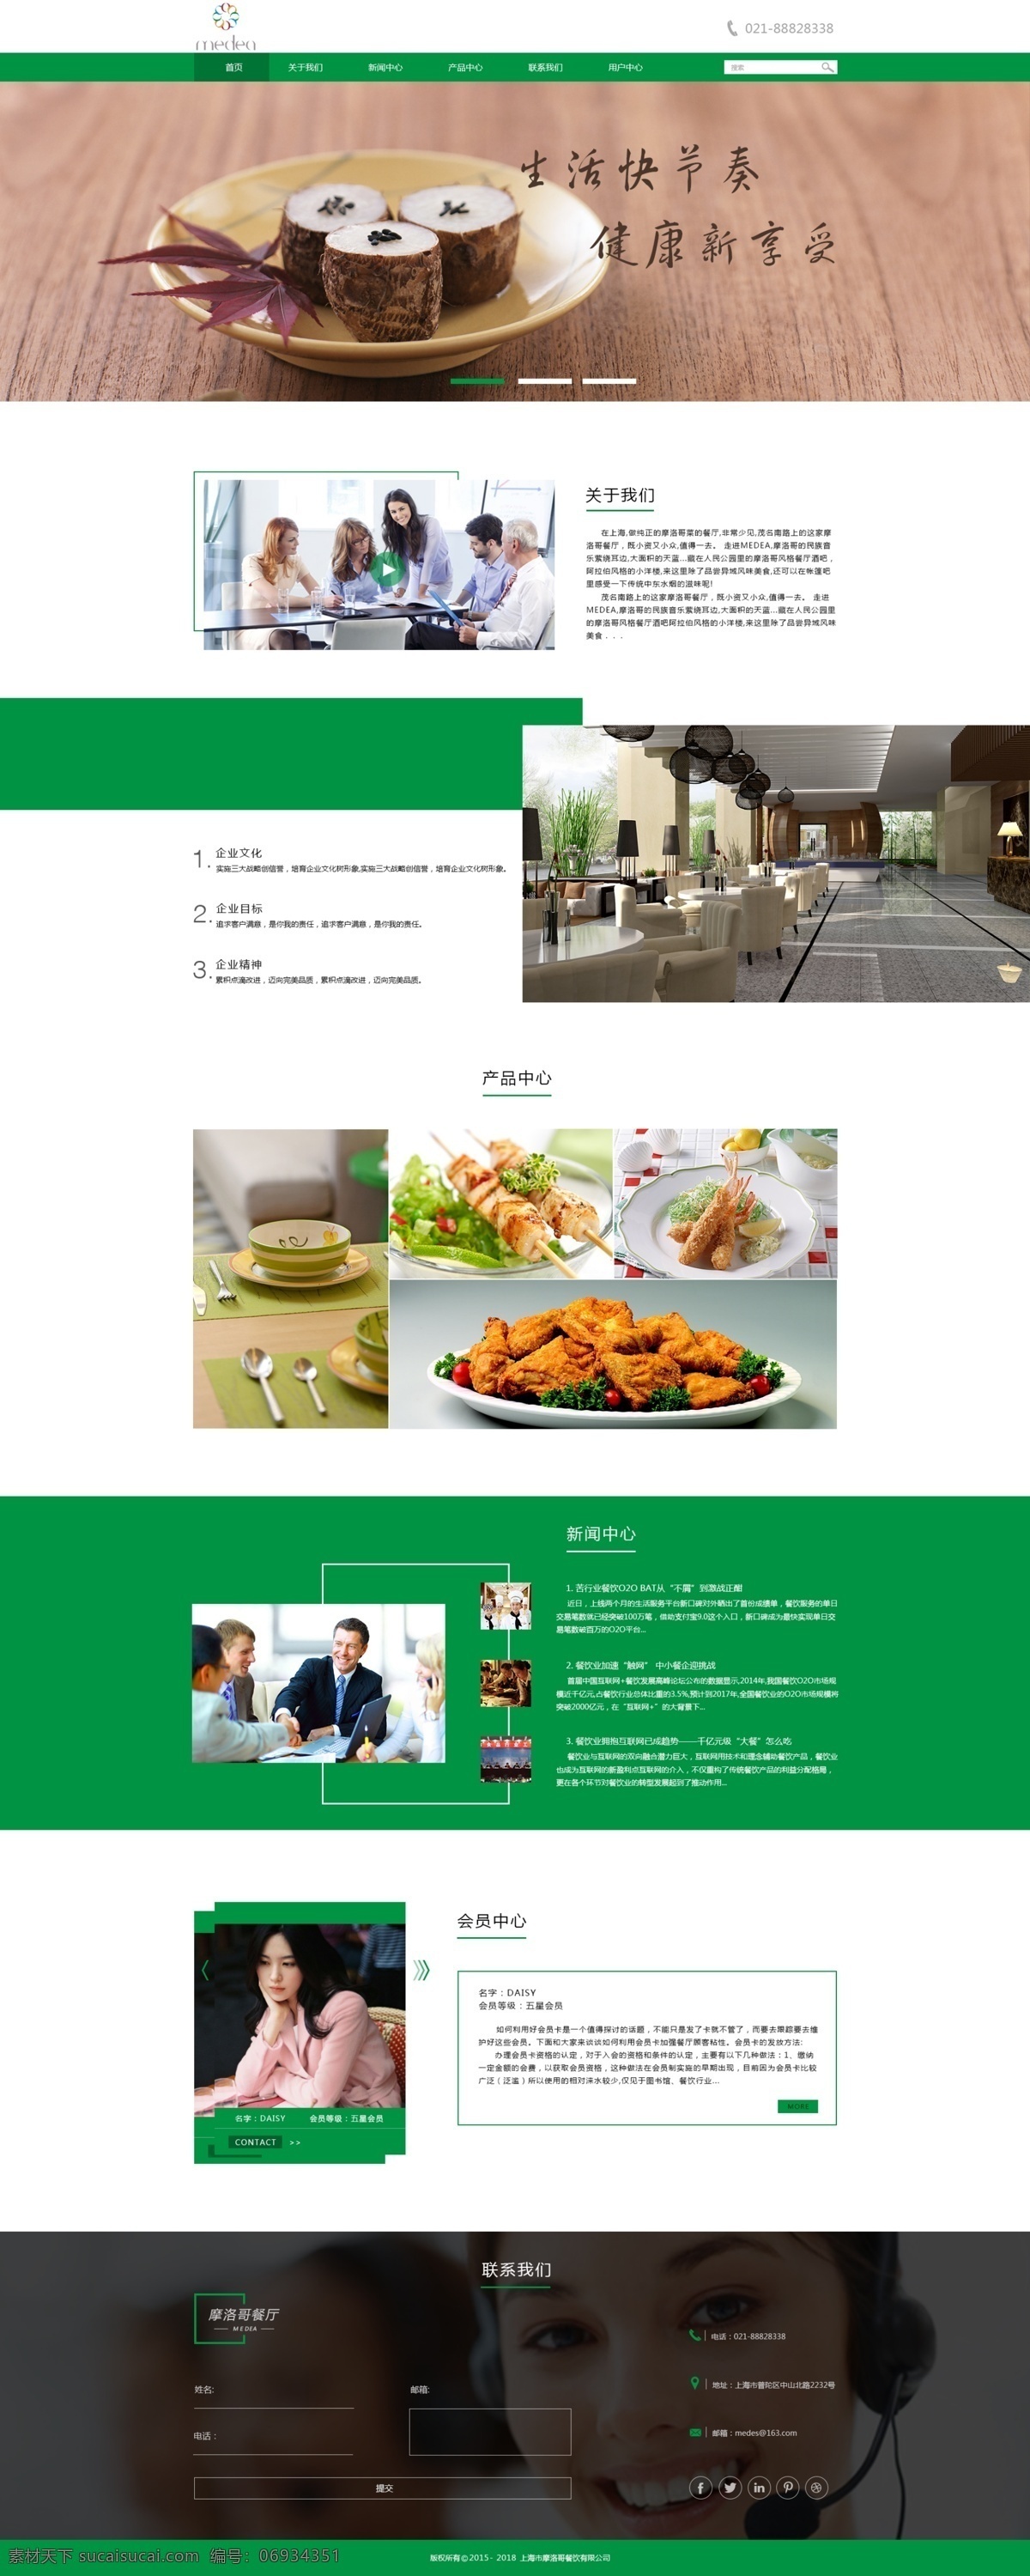 摩洛哥 餐厅 首页 绿色新鲜 健康享受 版式简洁